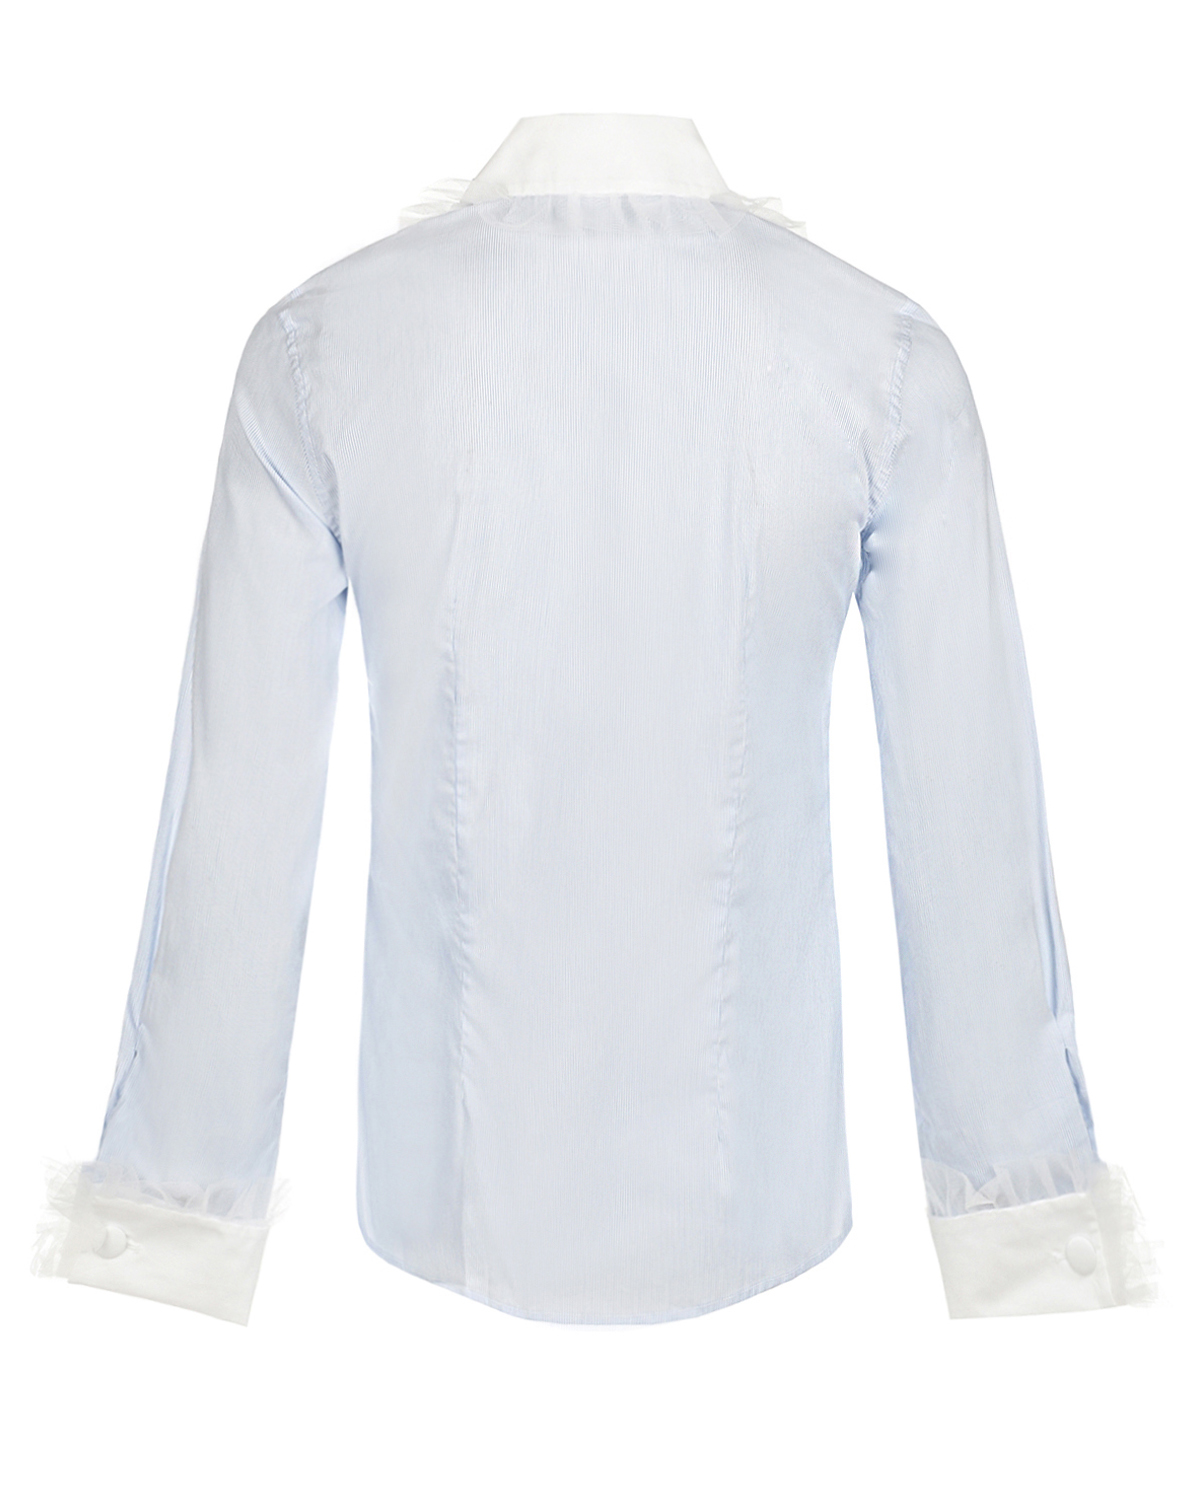 Рубашка в тонкую бело-голубую полоску Sara Roka, размер 40, цвет белый - фото 2